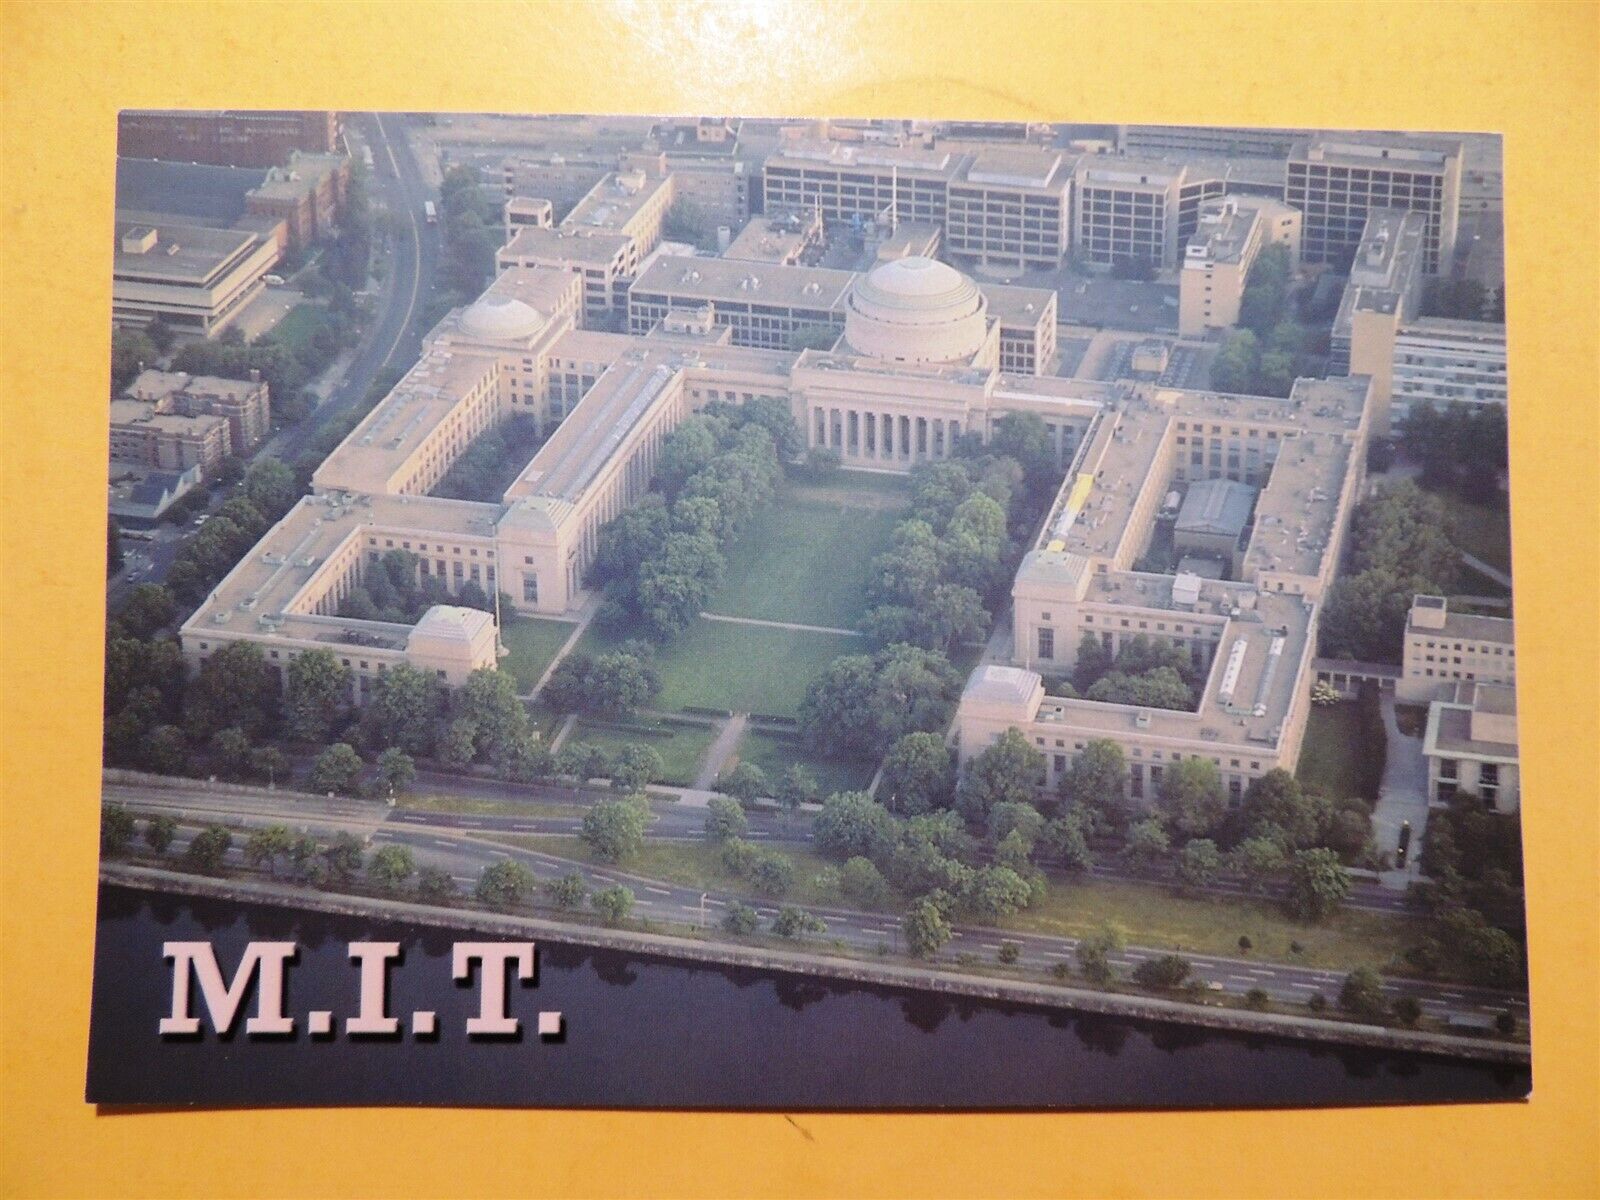 M.I.T. Cambridge Massachusetts aerial view of campus